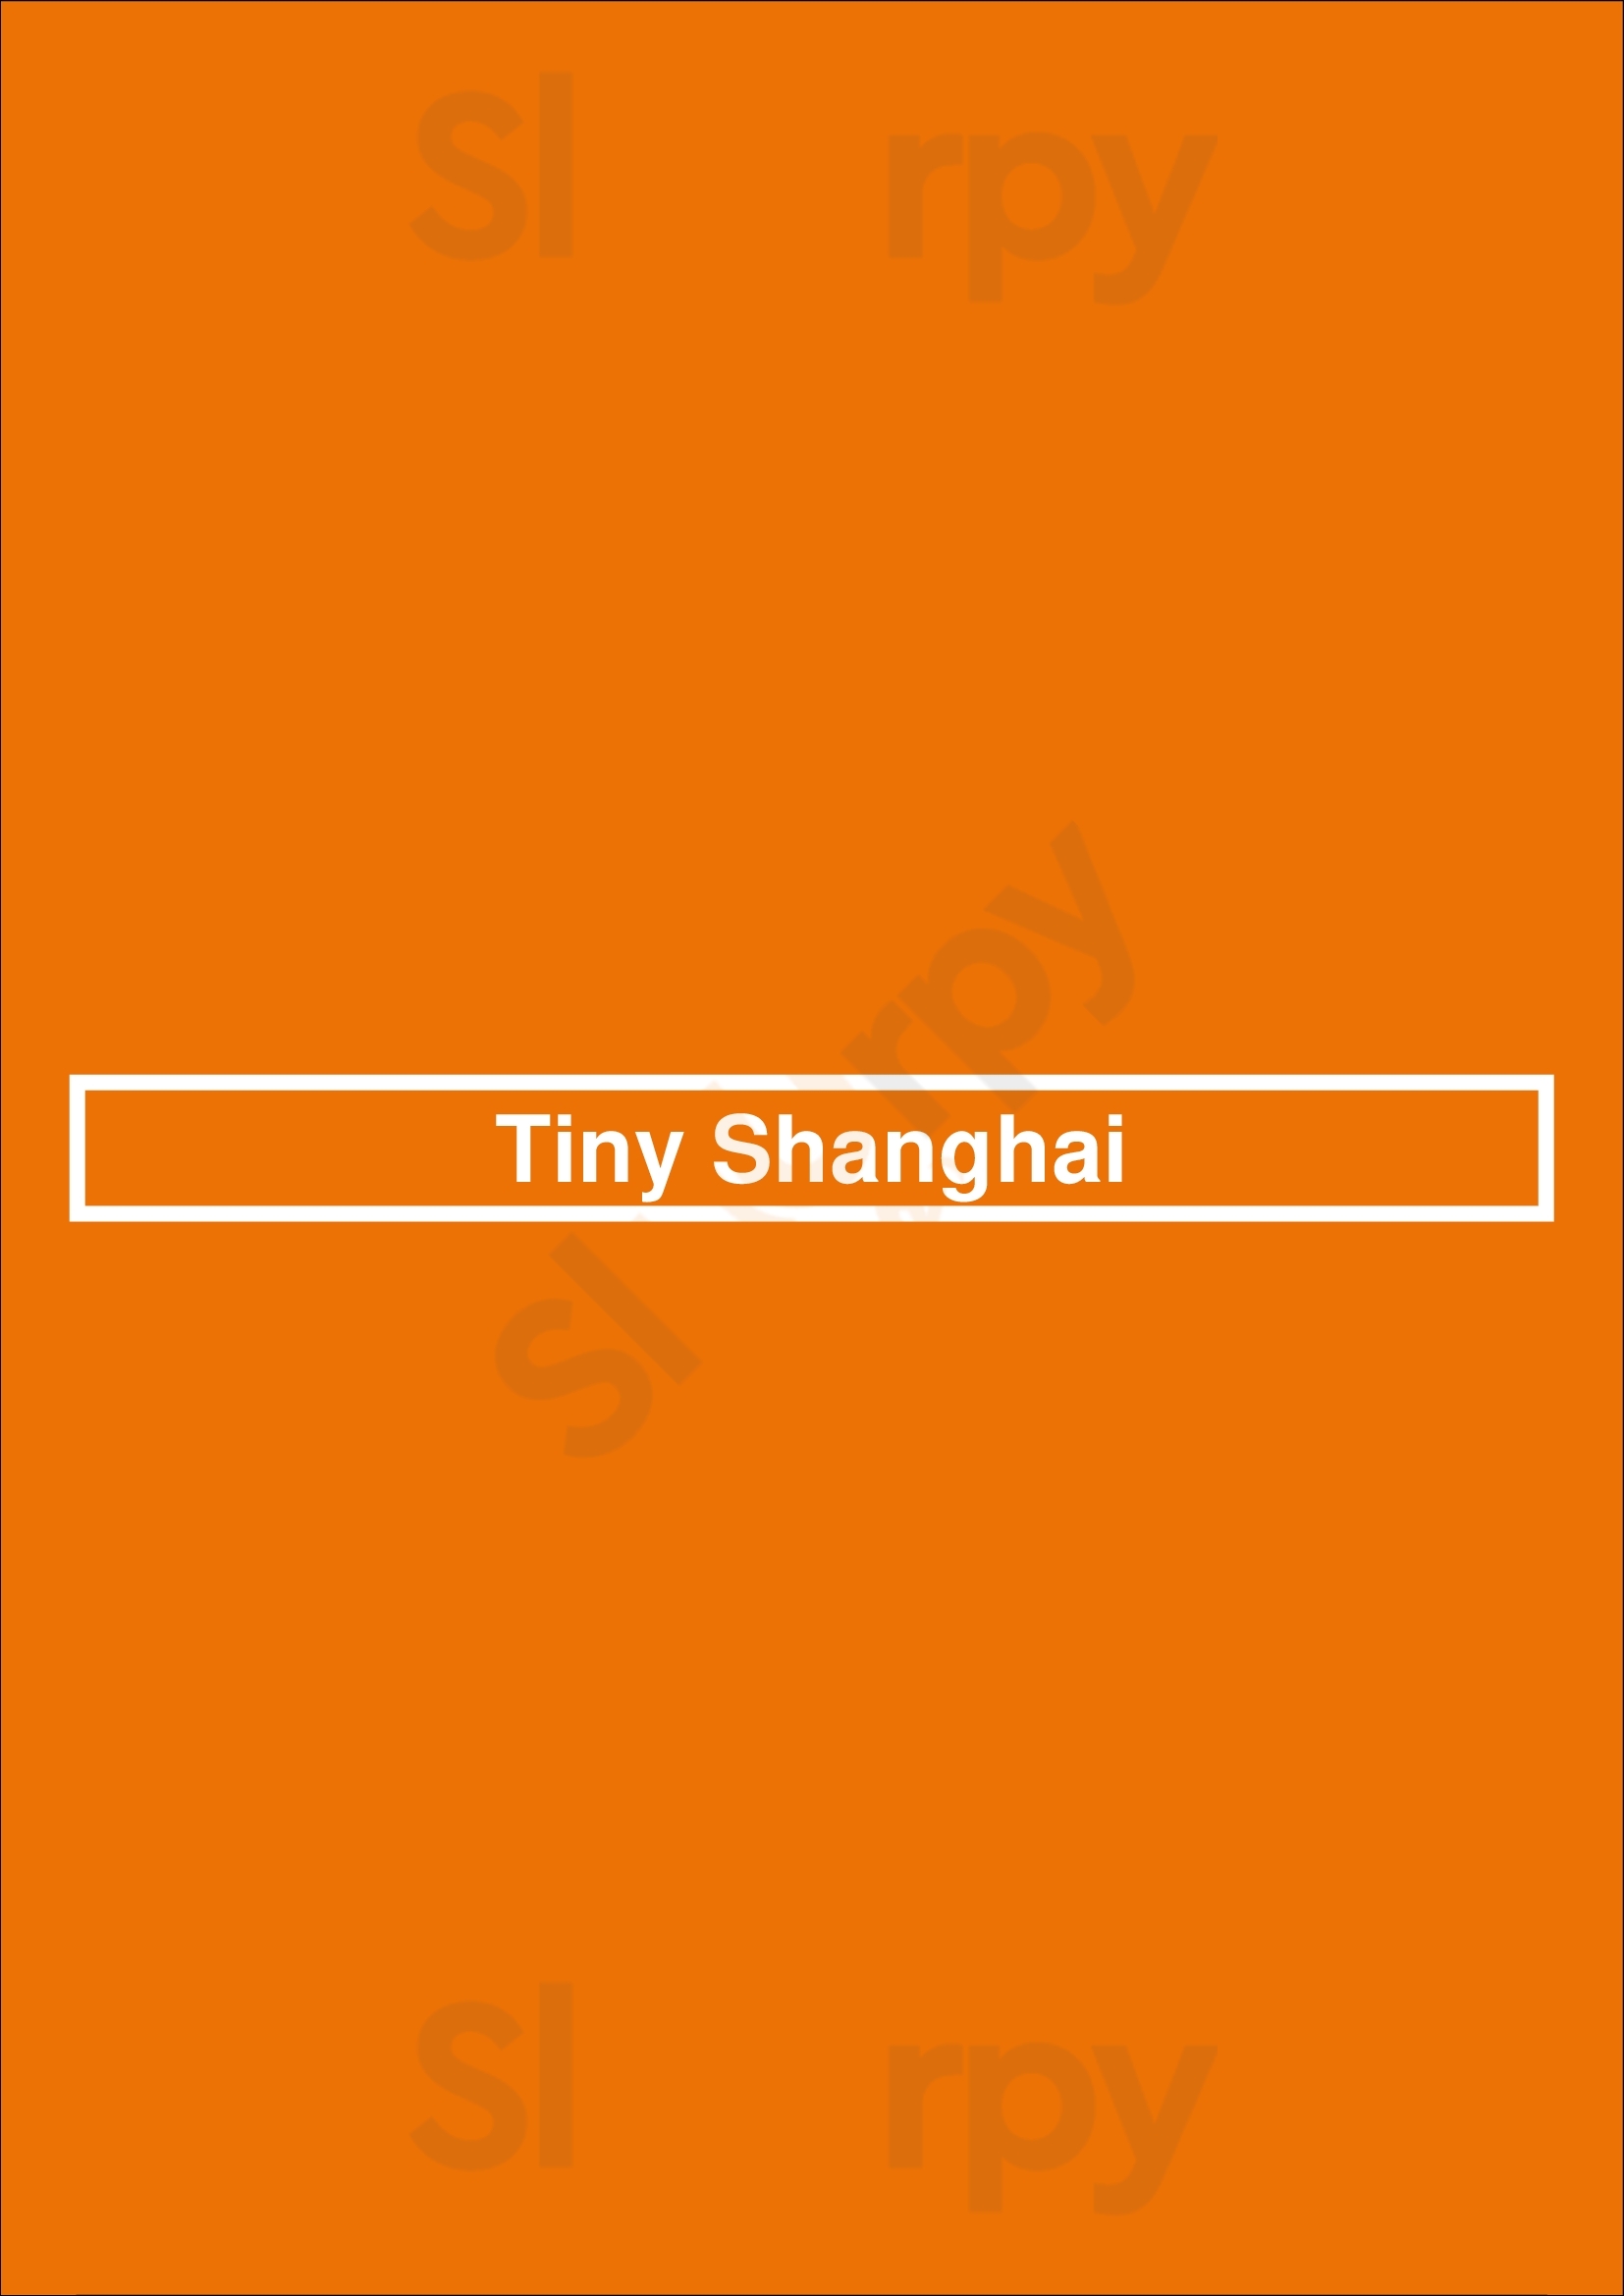 Tiny Shanghai New York City Menu - 1